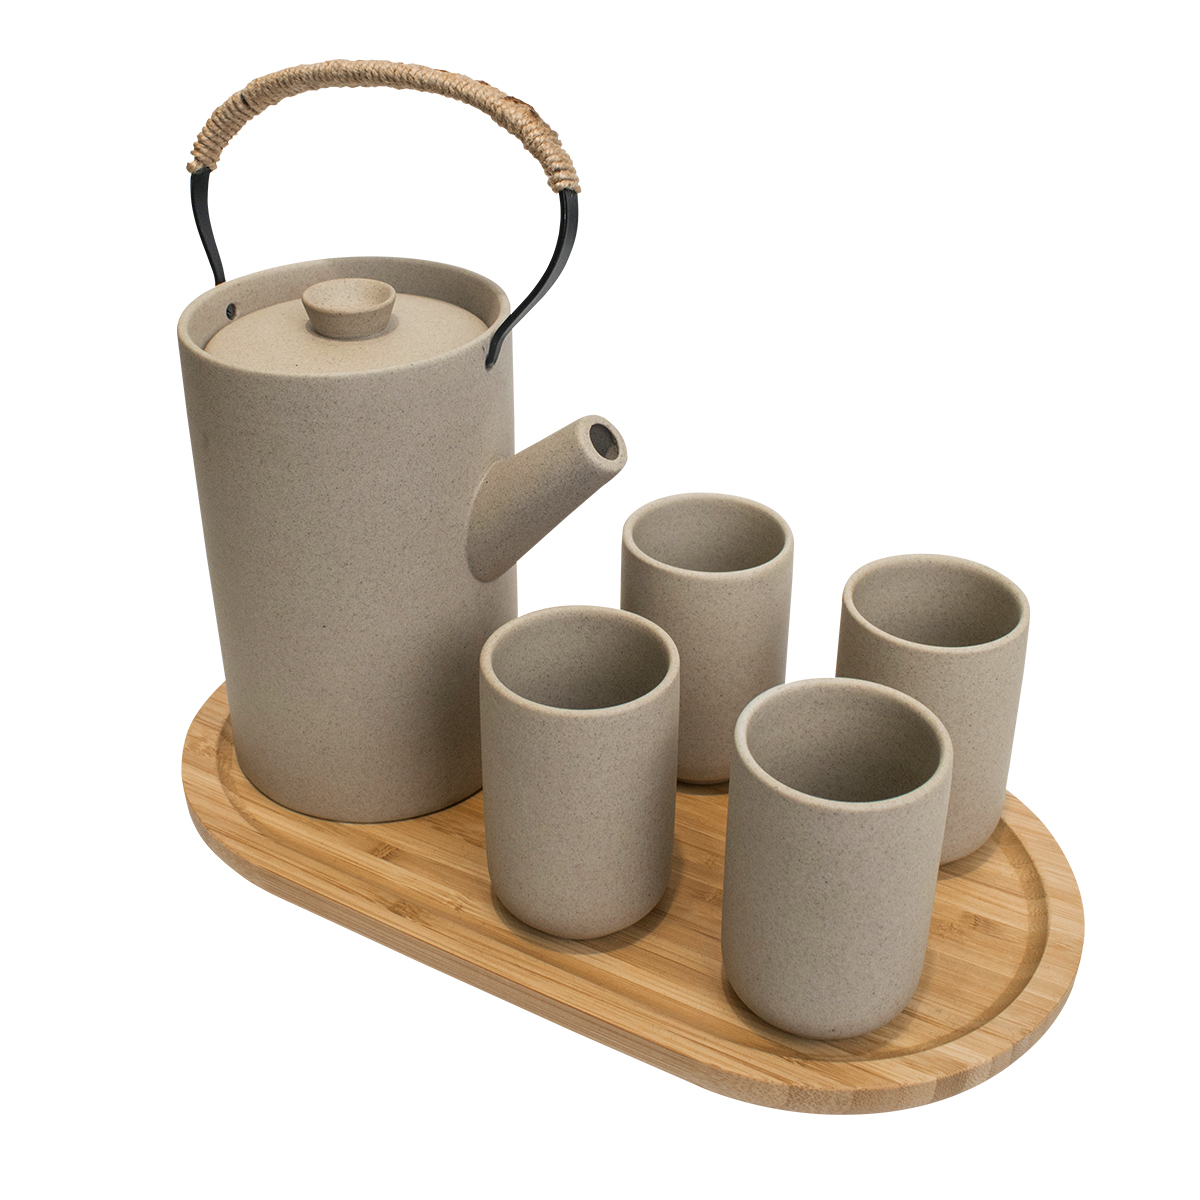 

Чайный набор, чайник, 4 стакана на бамбуковой подставке, цвет серый, MARMA MM-SET-06